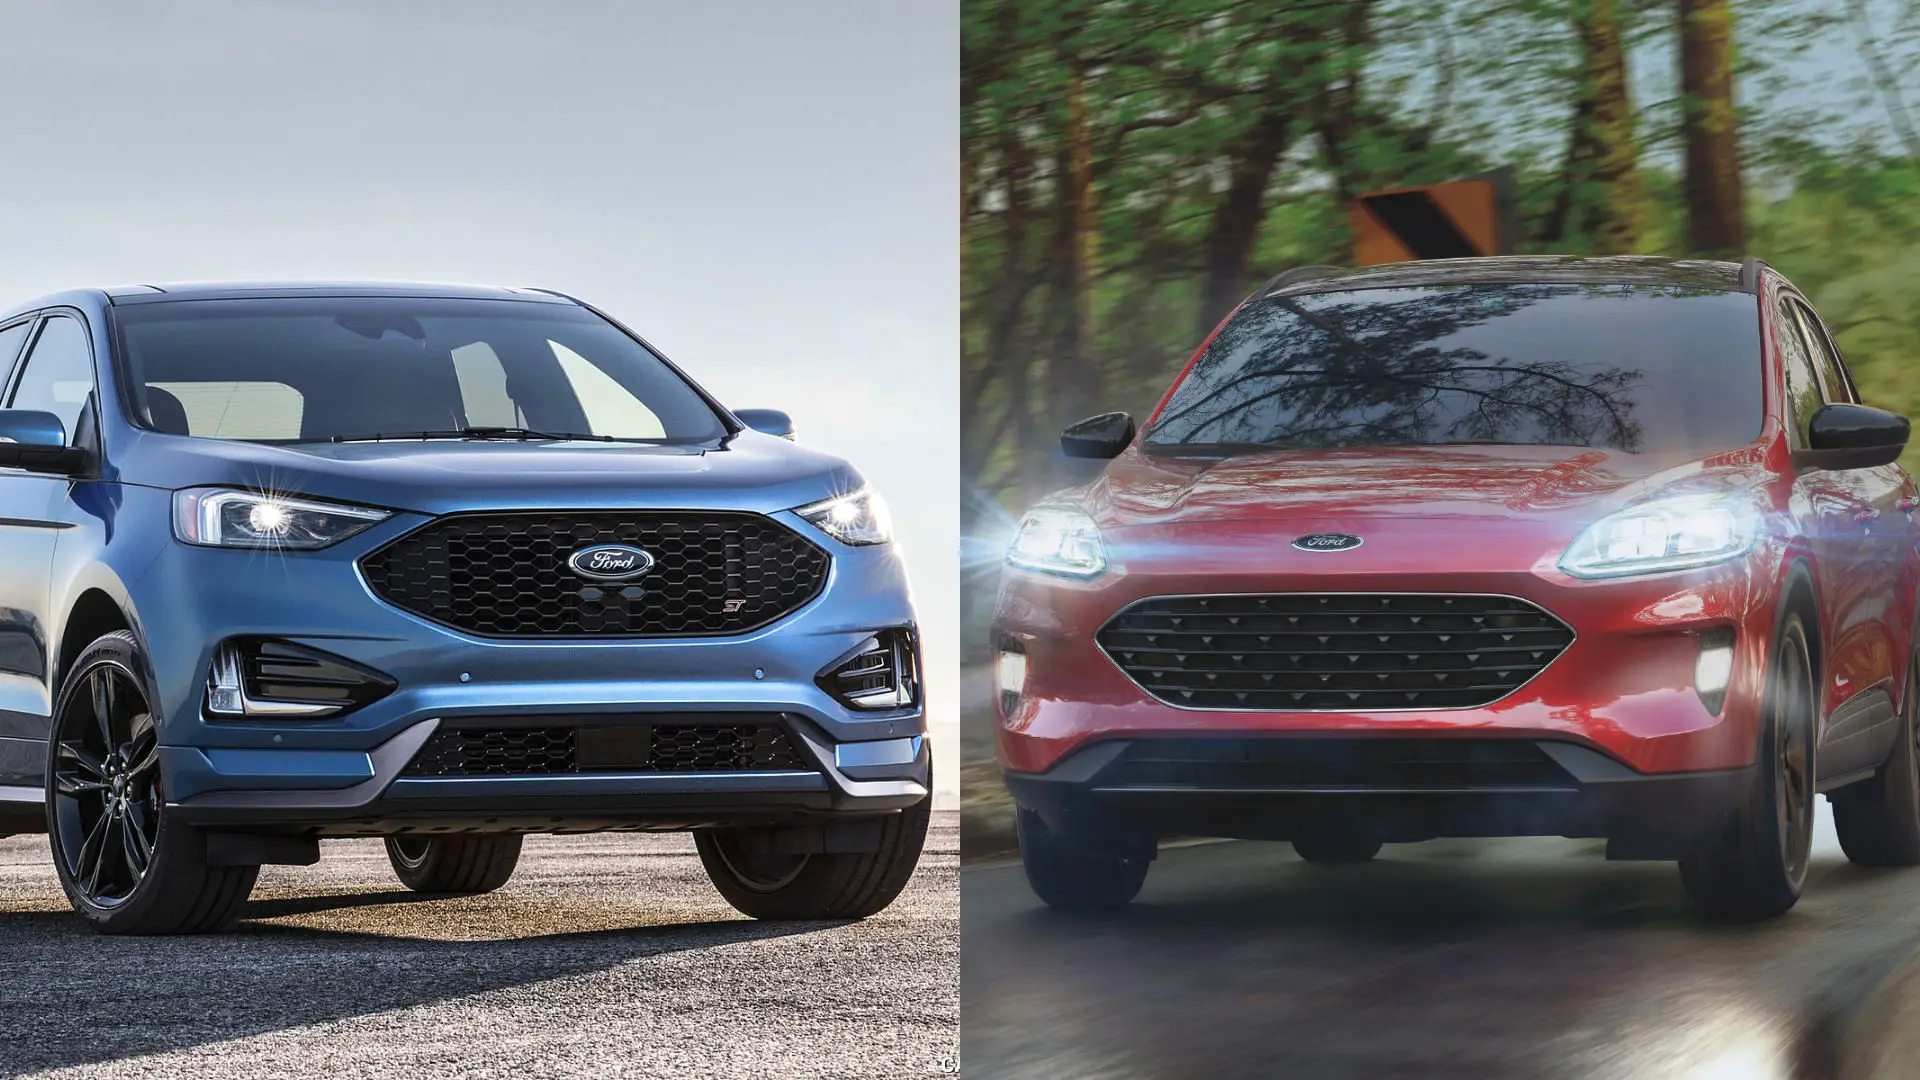 Ford Edge vs Escape comparison